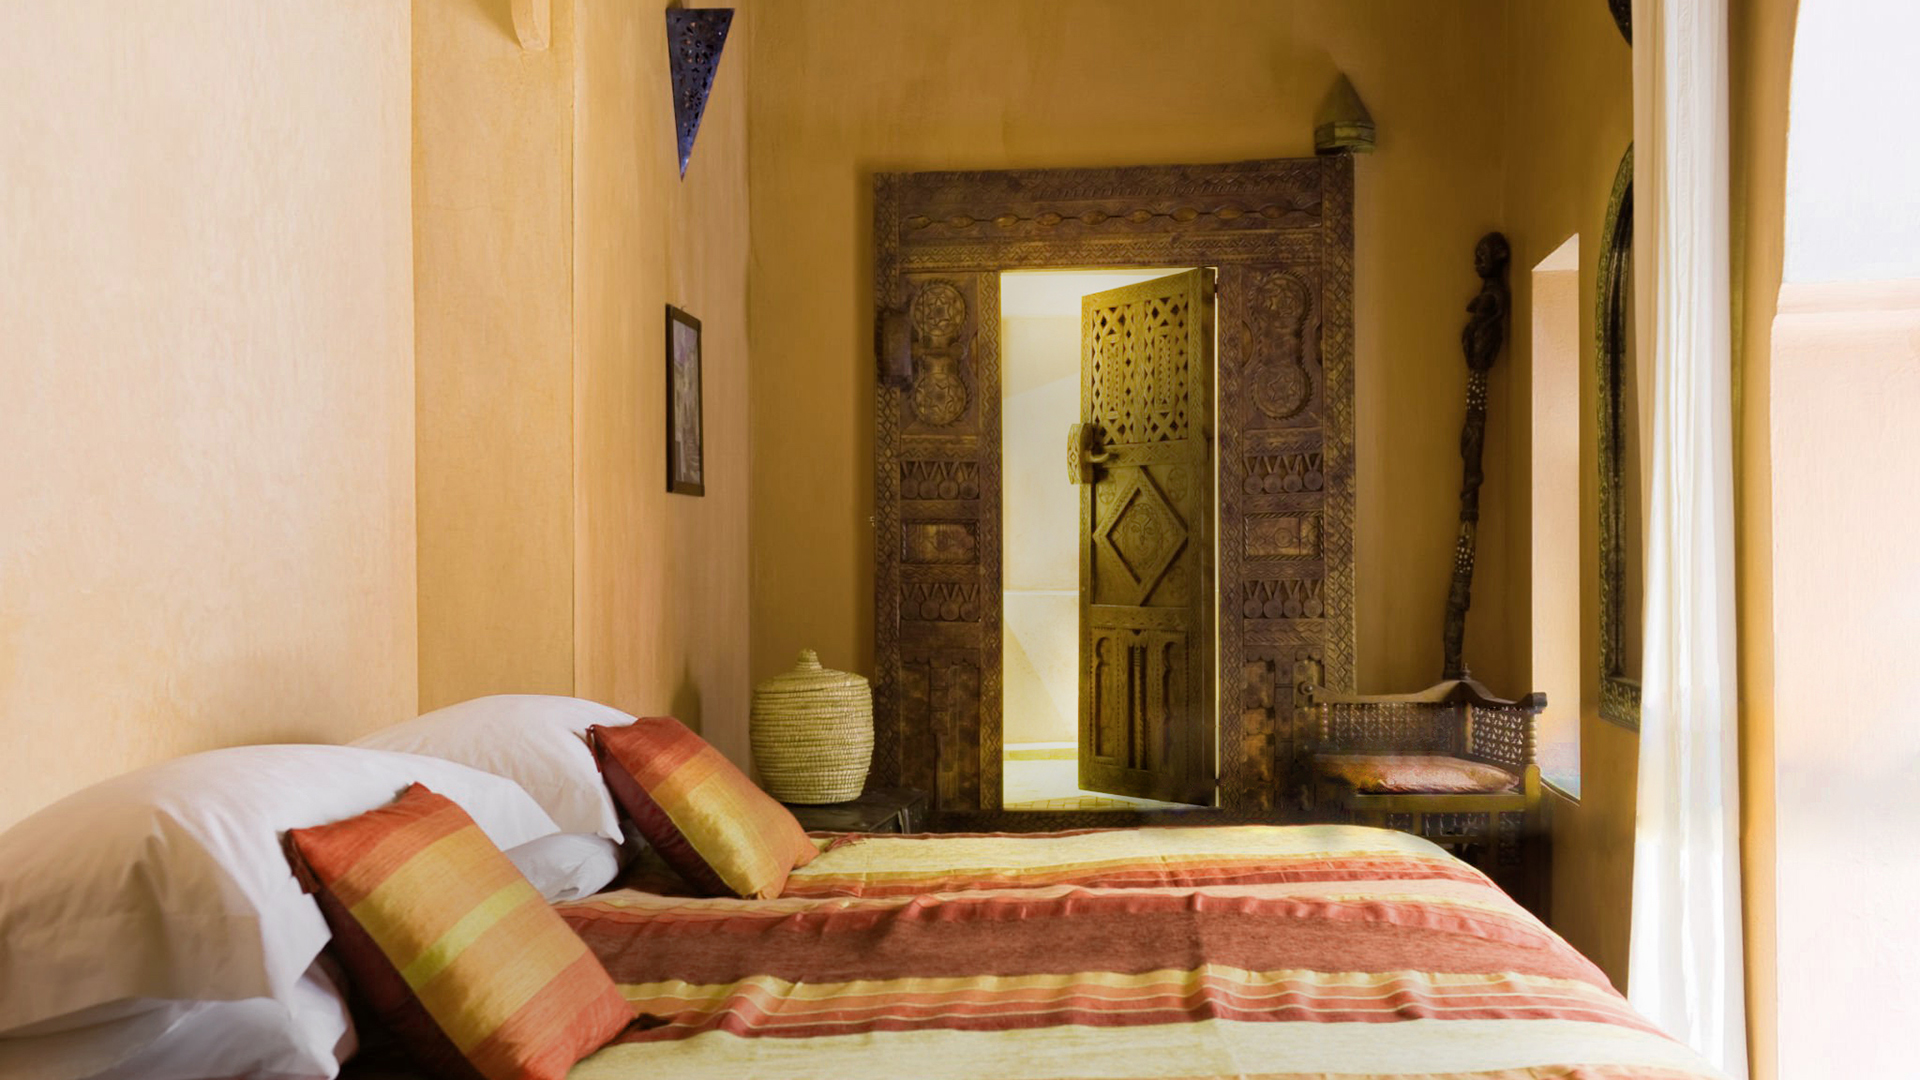 アラビアスタイルの寝室、壁にはタデラクトが施されています